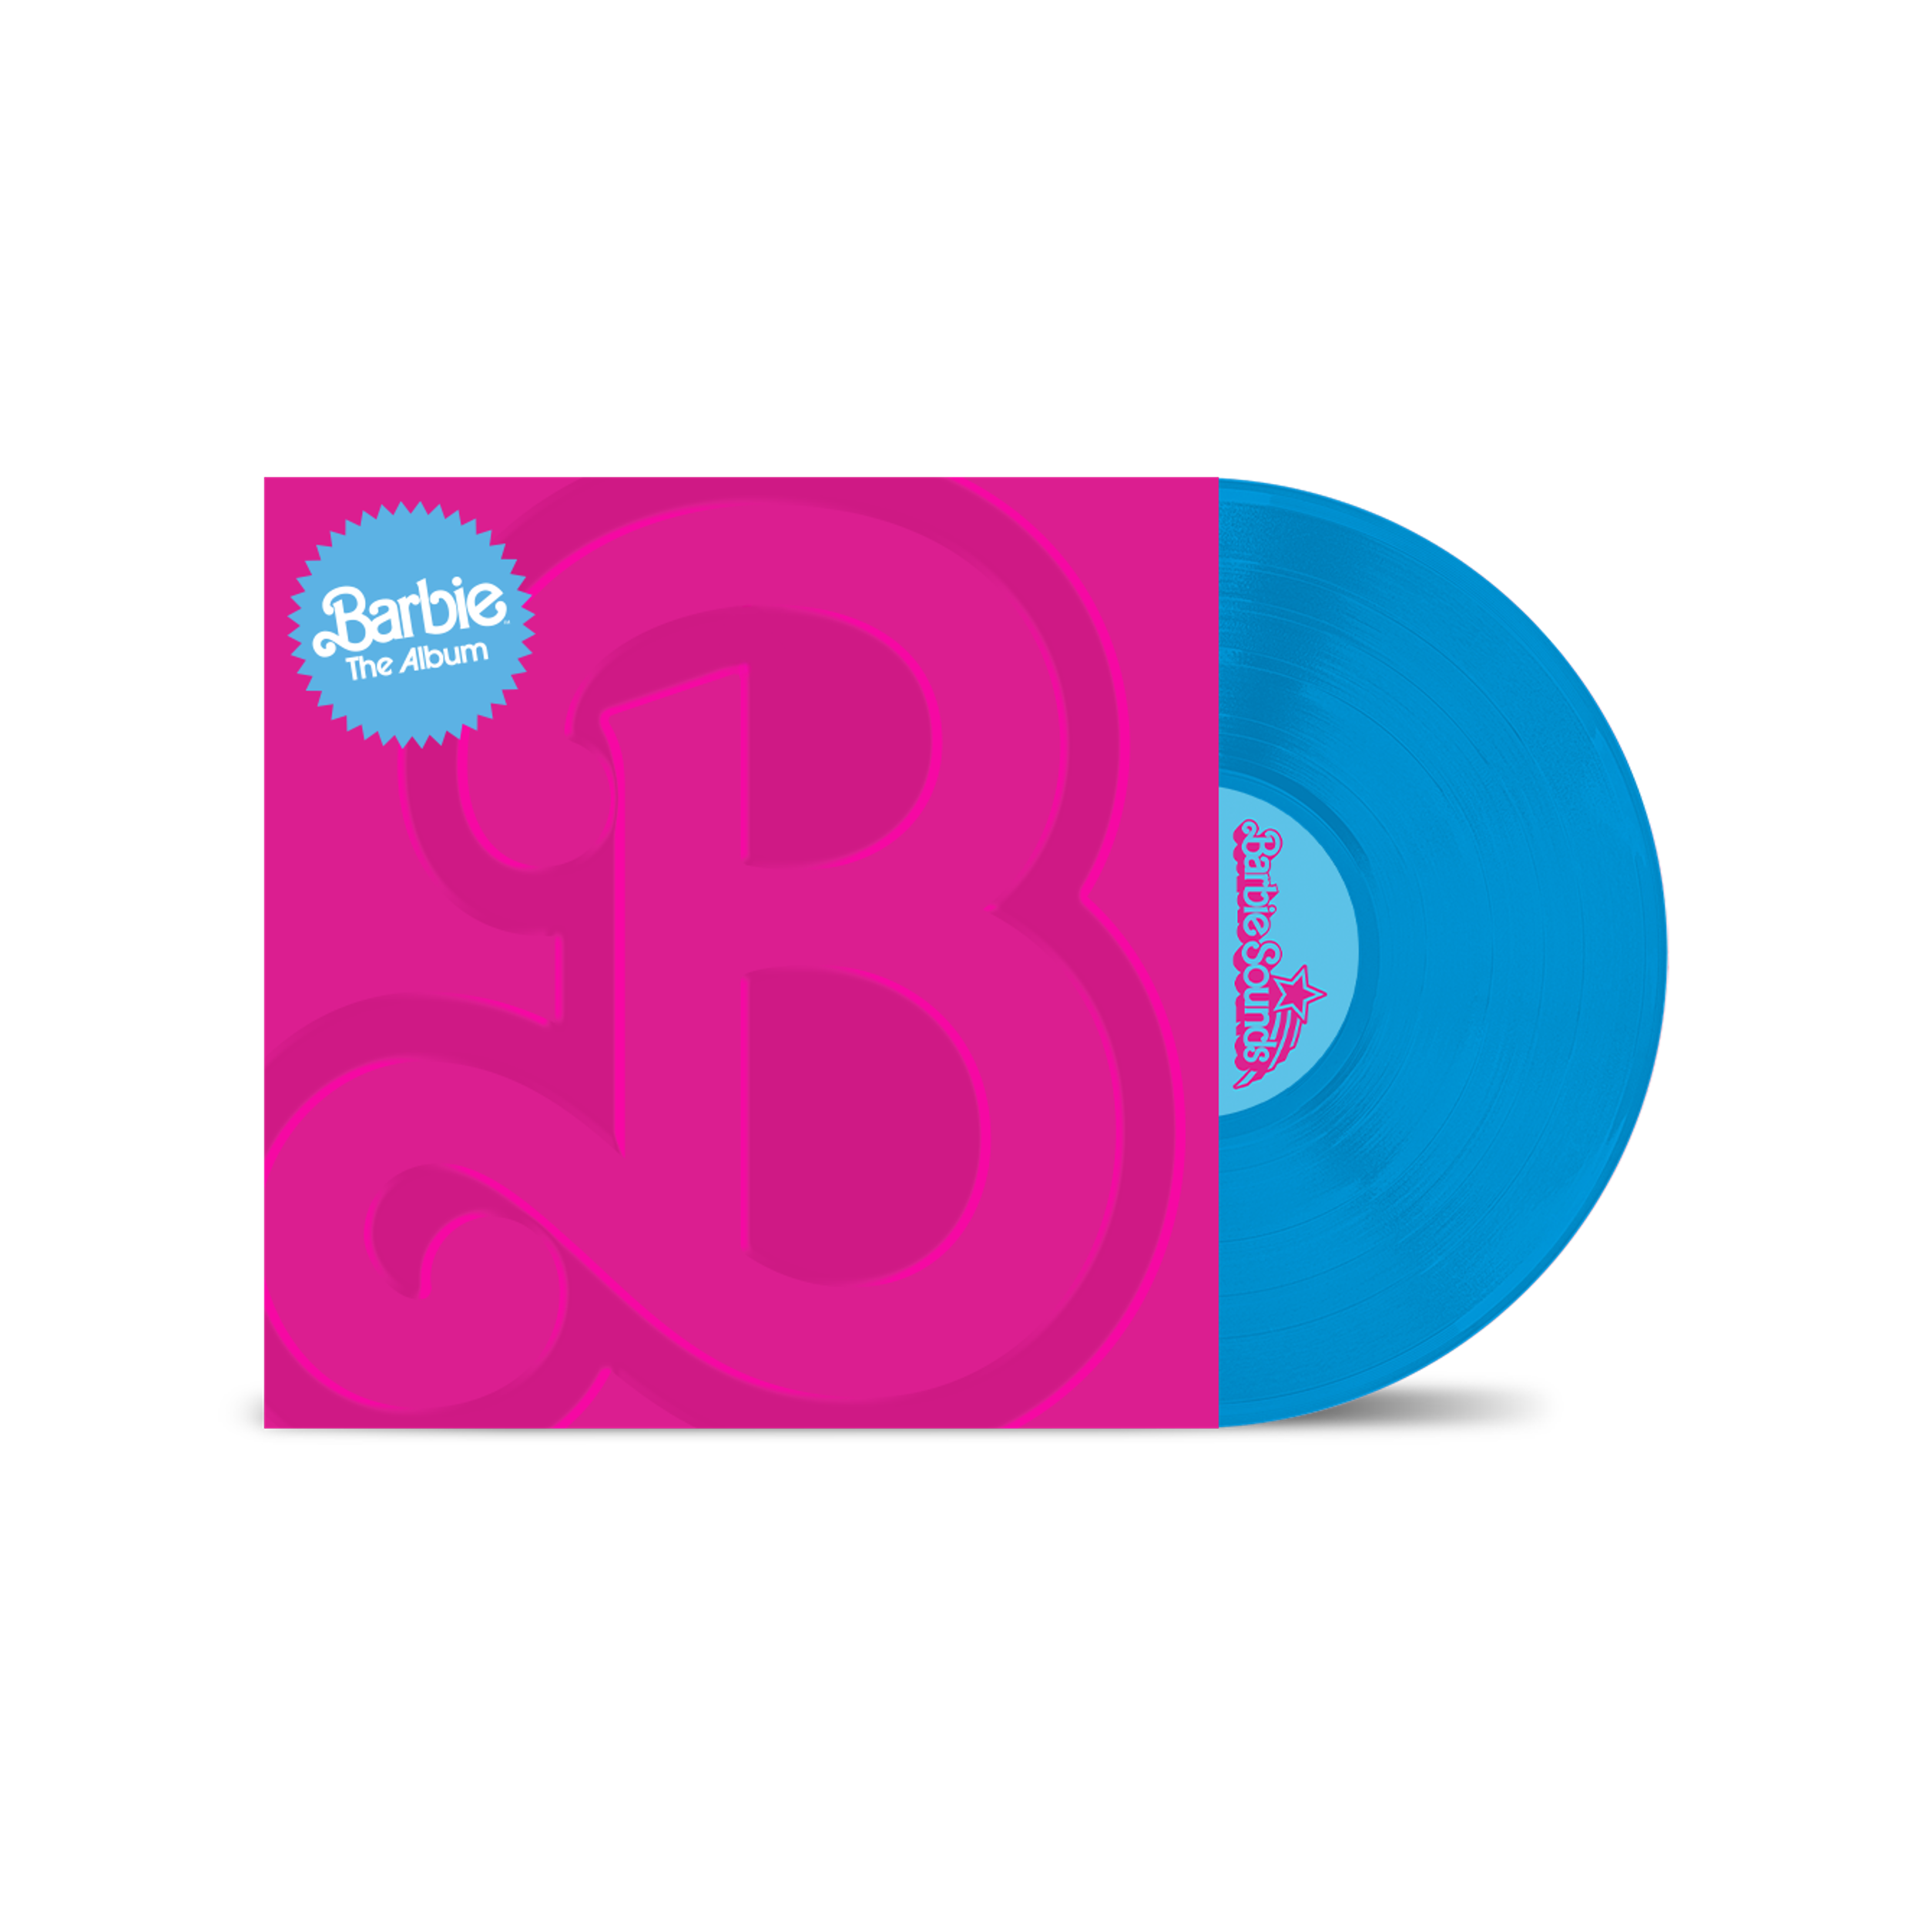 BARBIE THE ALBUM (Vinile Colorato Celeste con Stampa a Rilievo in Edizione Limitata – Esclusiva Warner Music Italy Shop)